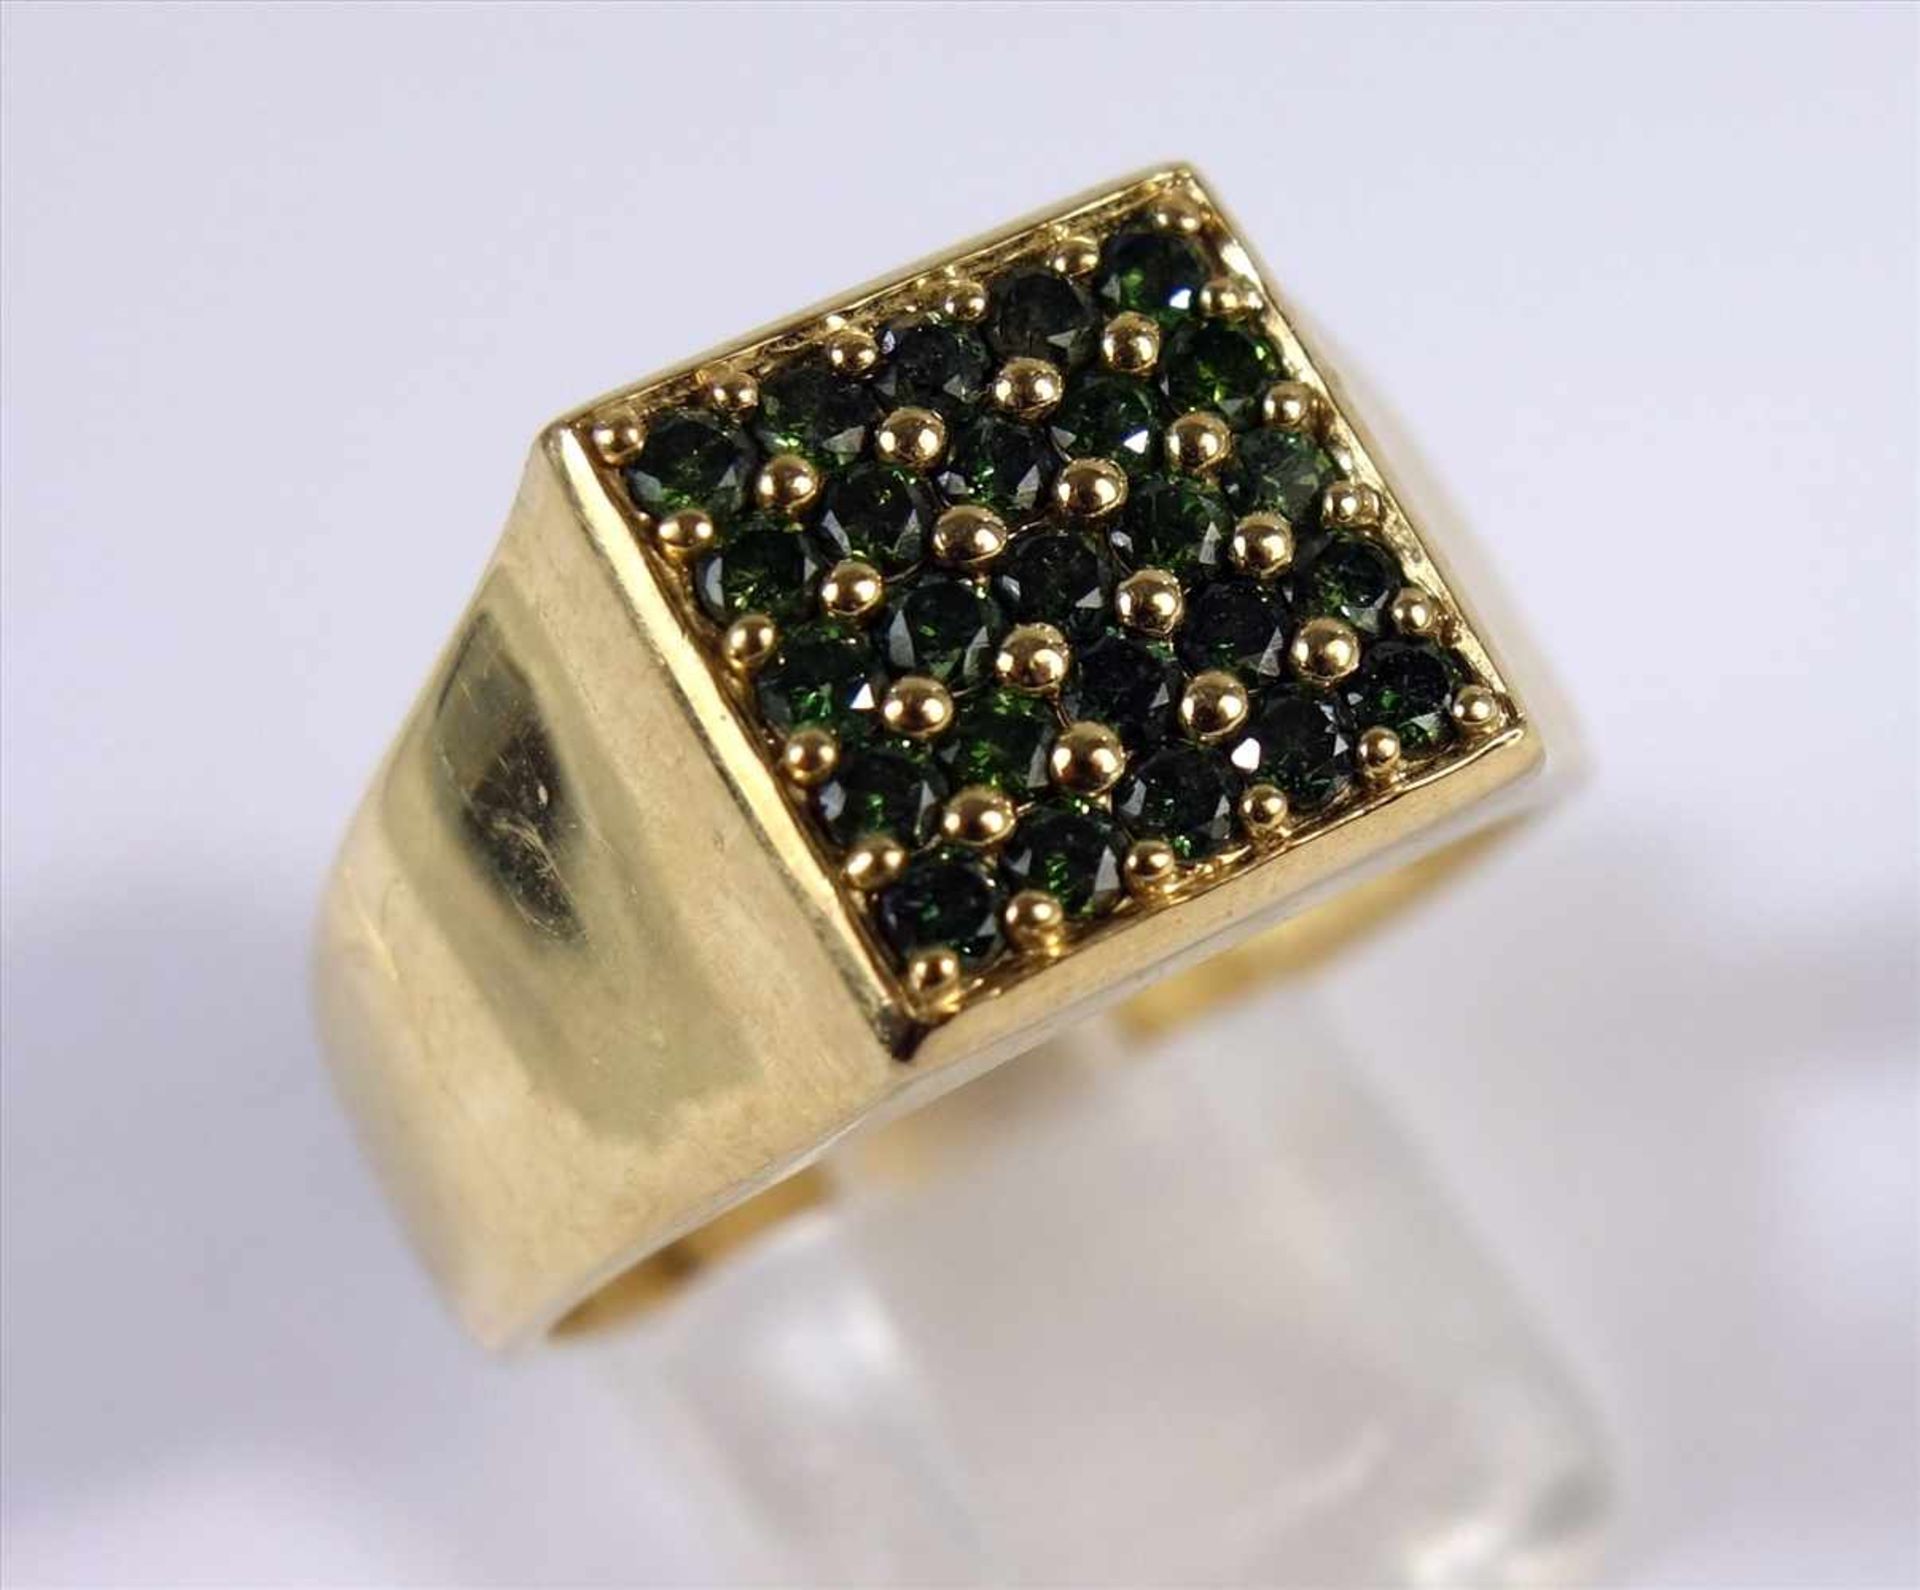 Waldgrüner Brillant-Ring, 375er Gold, mit Echtheitszertifikat, Gesamt-Gew.7,17g, 25 afrikanische